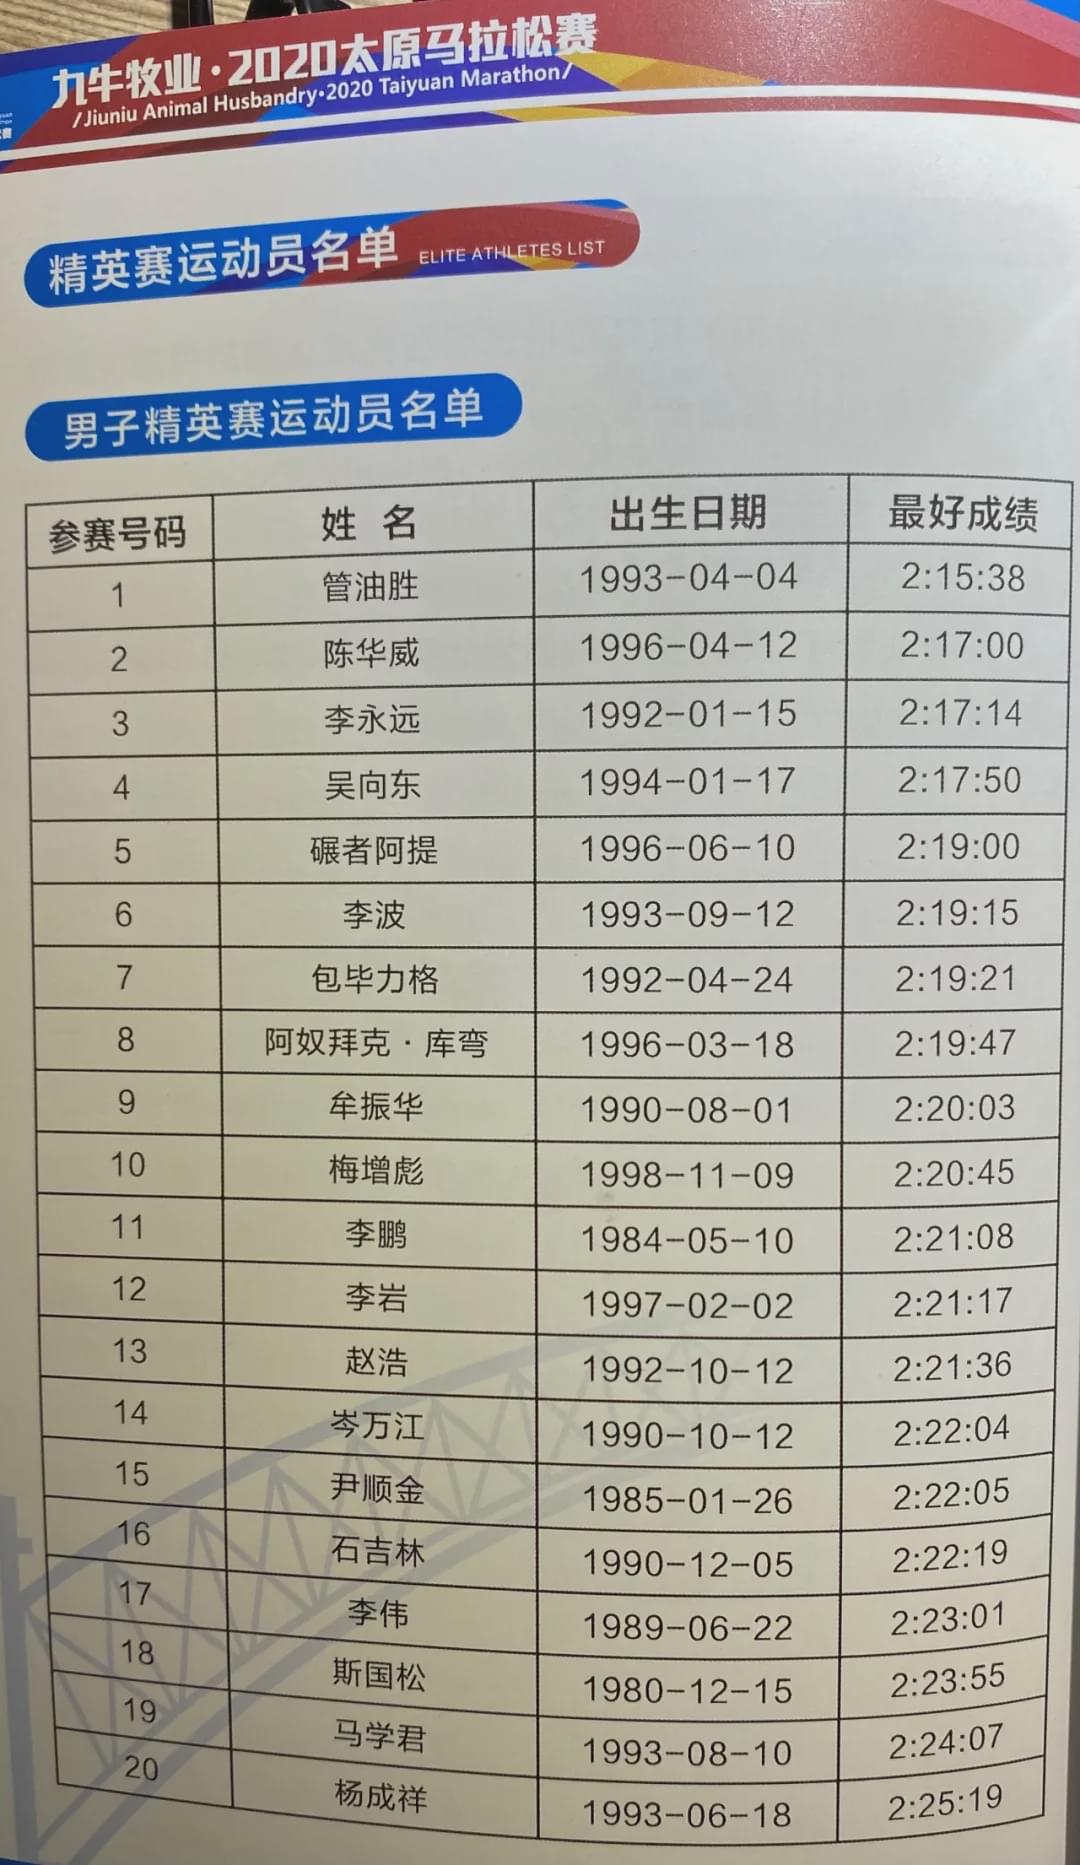 2020太原马拉松鸣枪！杨成祥、姚妙夺男女冠军，均破赛道纪录！(10)